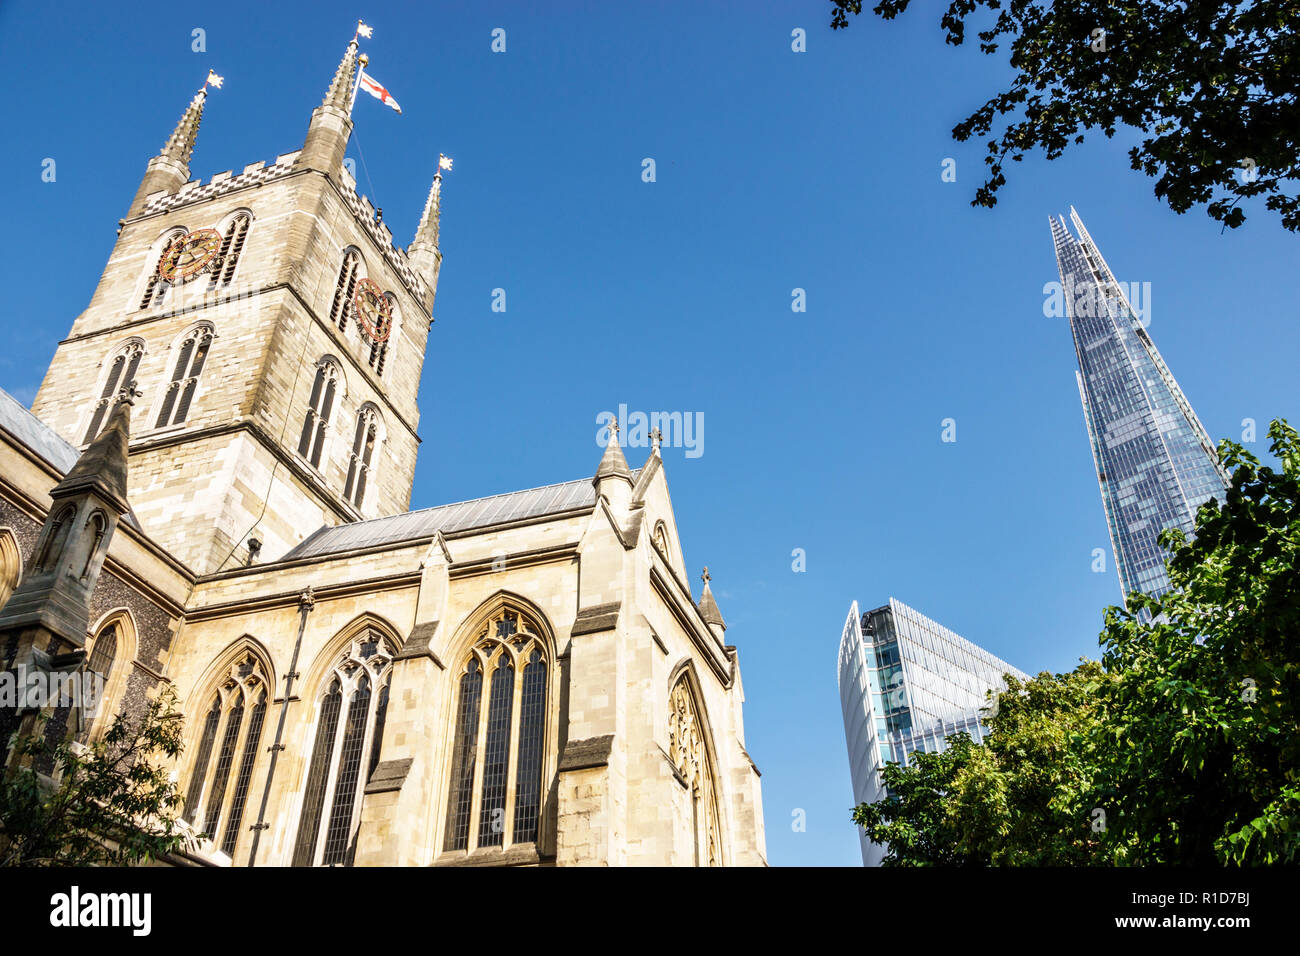 London England, Großbritannien, Southwark Cathedral, anglikanische Diözese Southwark, christliche Kirche, gotischer Stil, Turm, außen, außen, Shard Wolkenkratzer bui Stockfoto